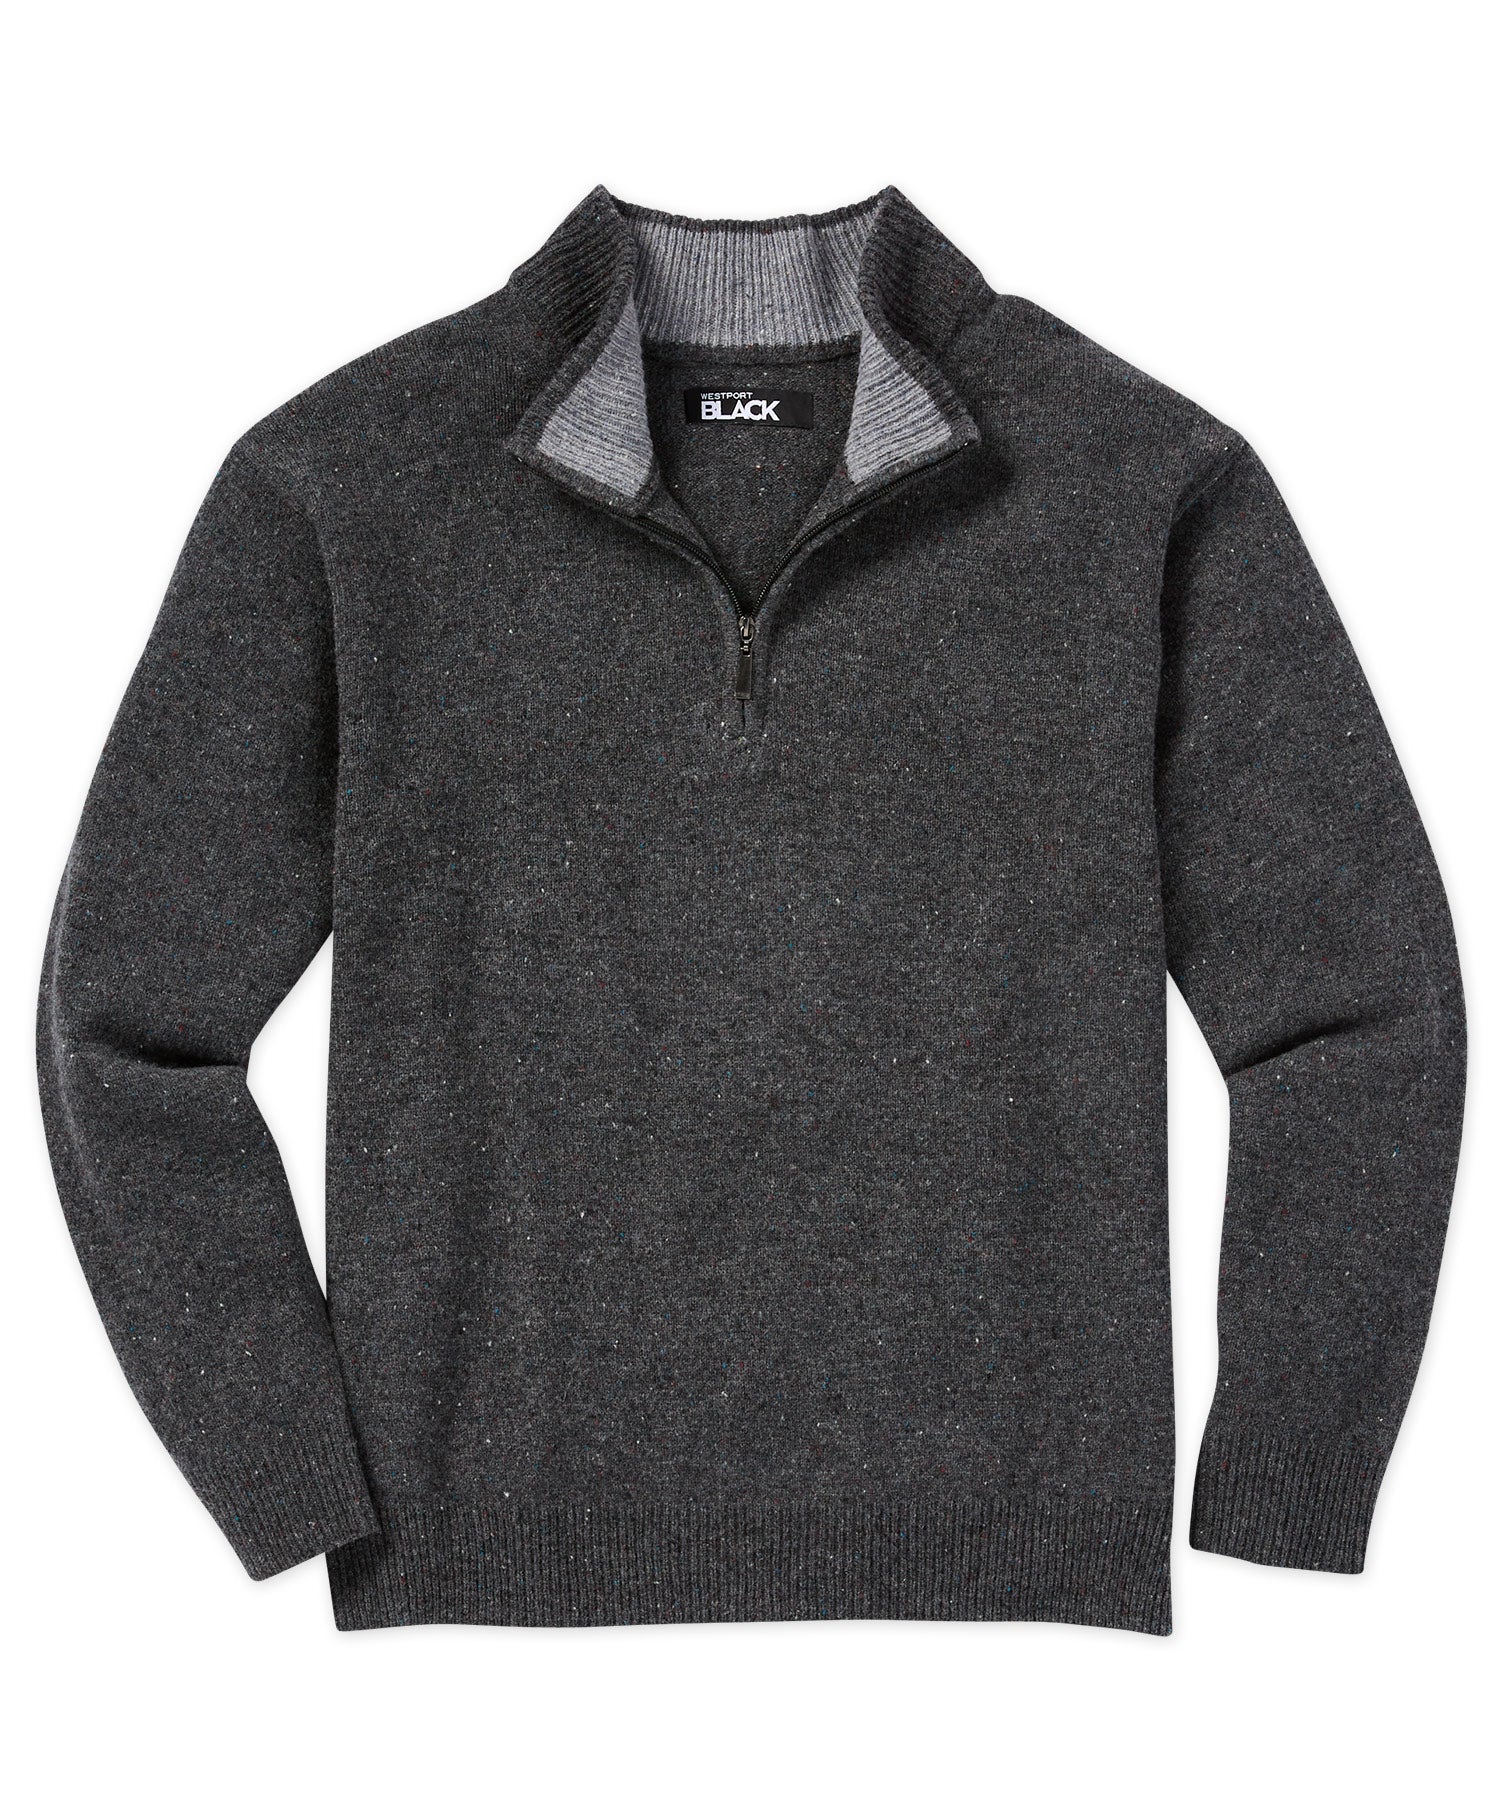 Westport Black Half-Zip Sweater - Westport Big & Tall